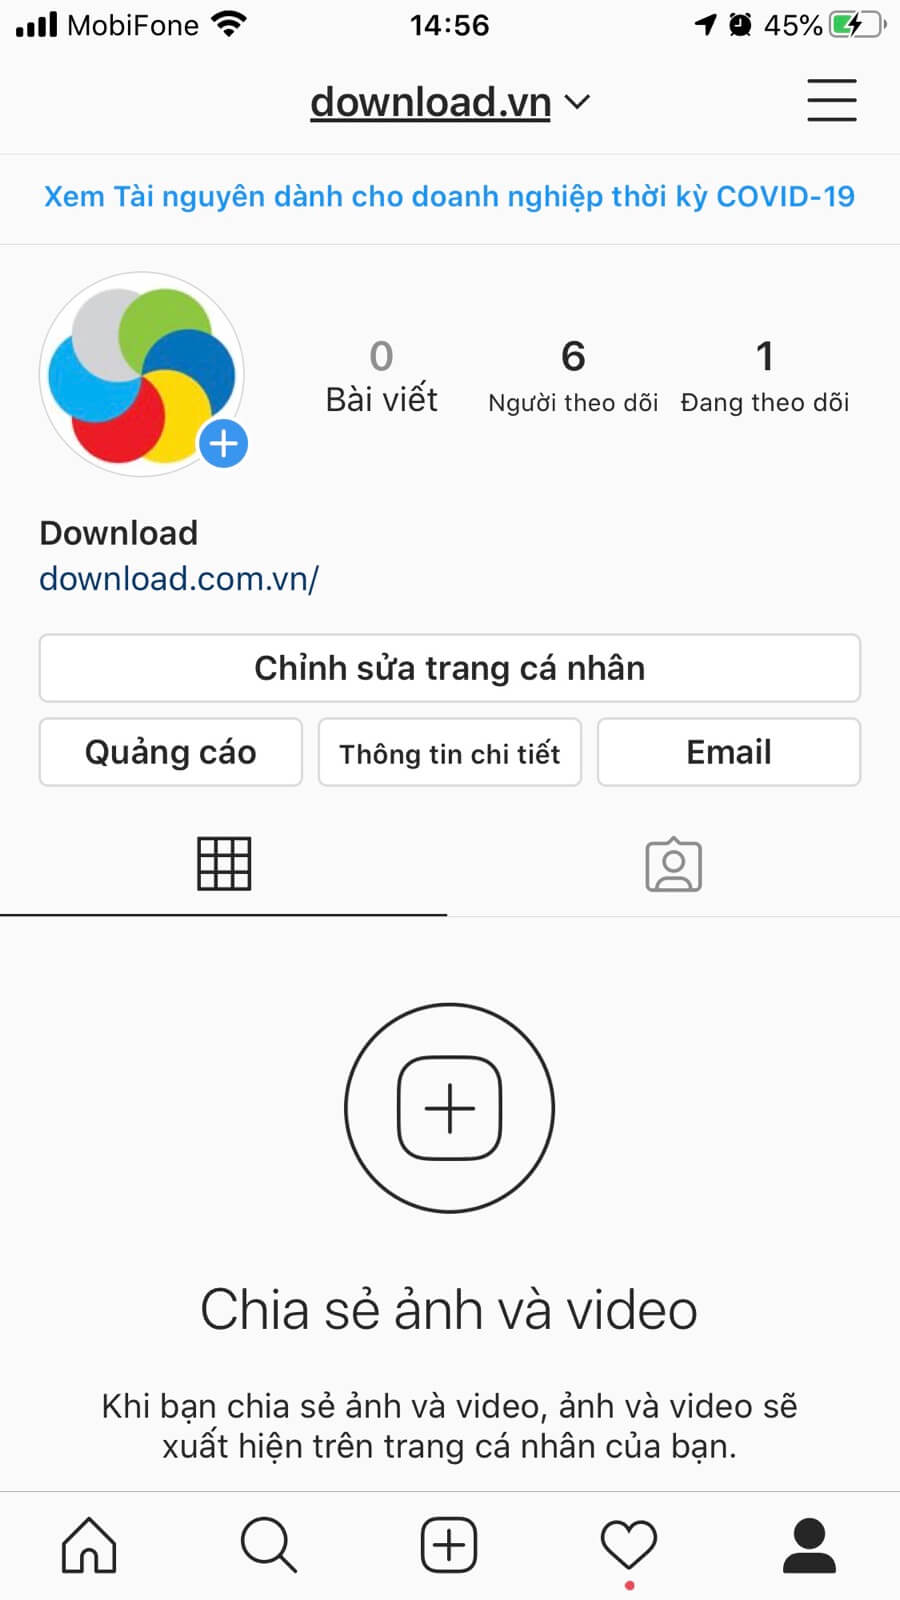 Hồ sơ Instagram Download.com.vn